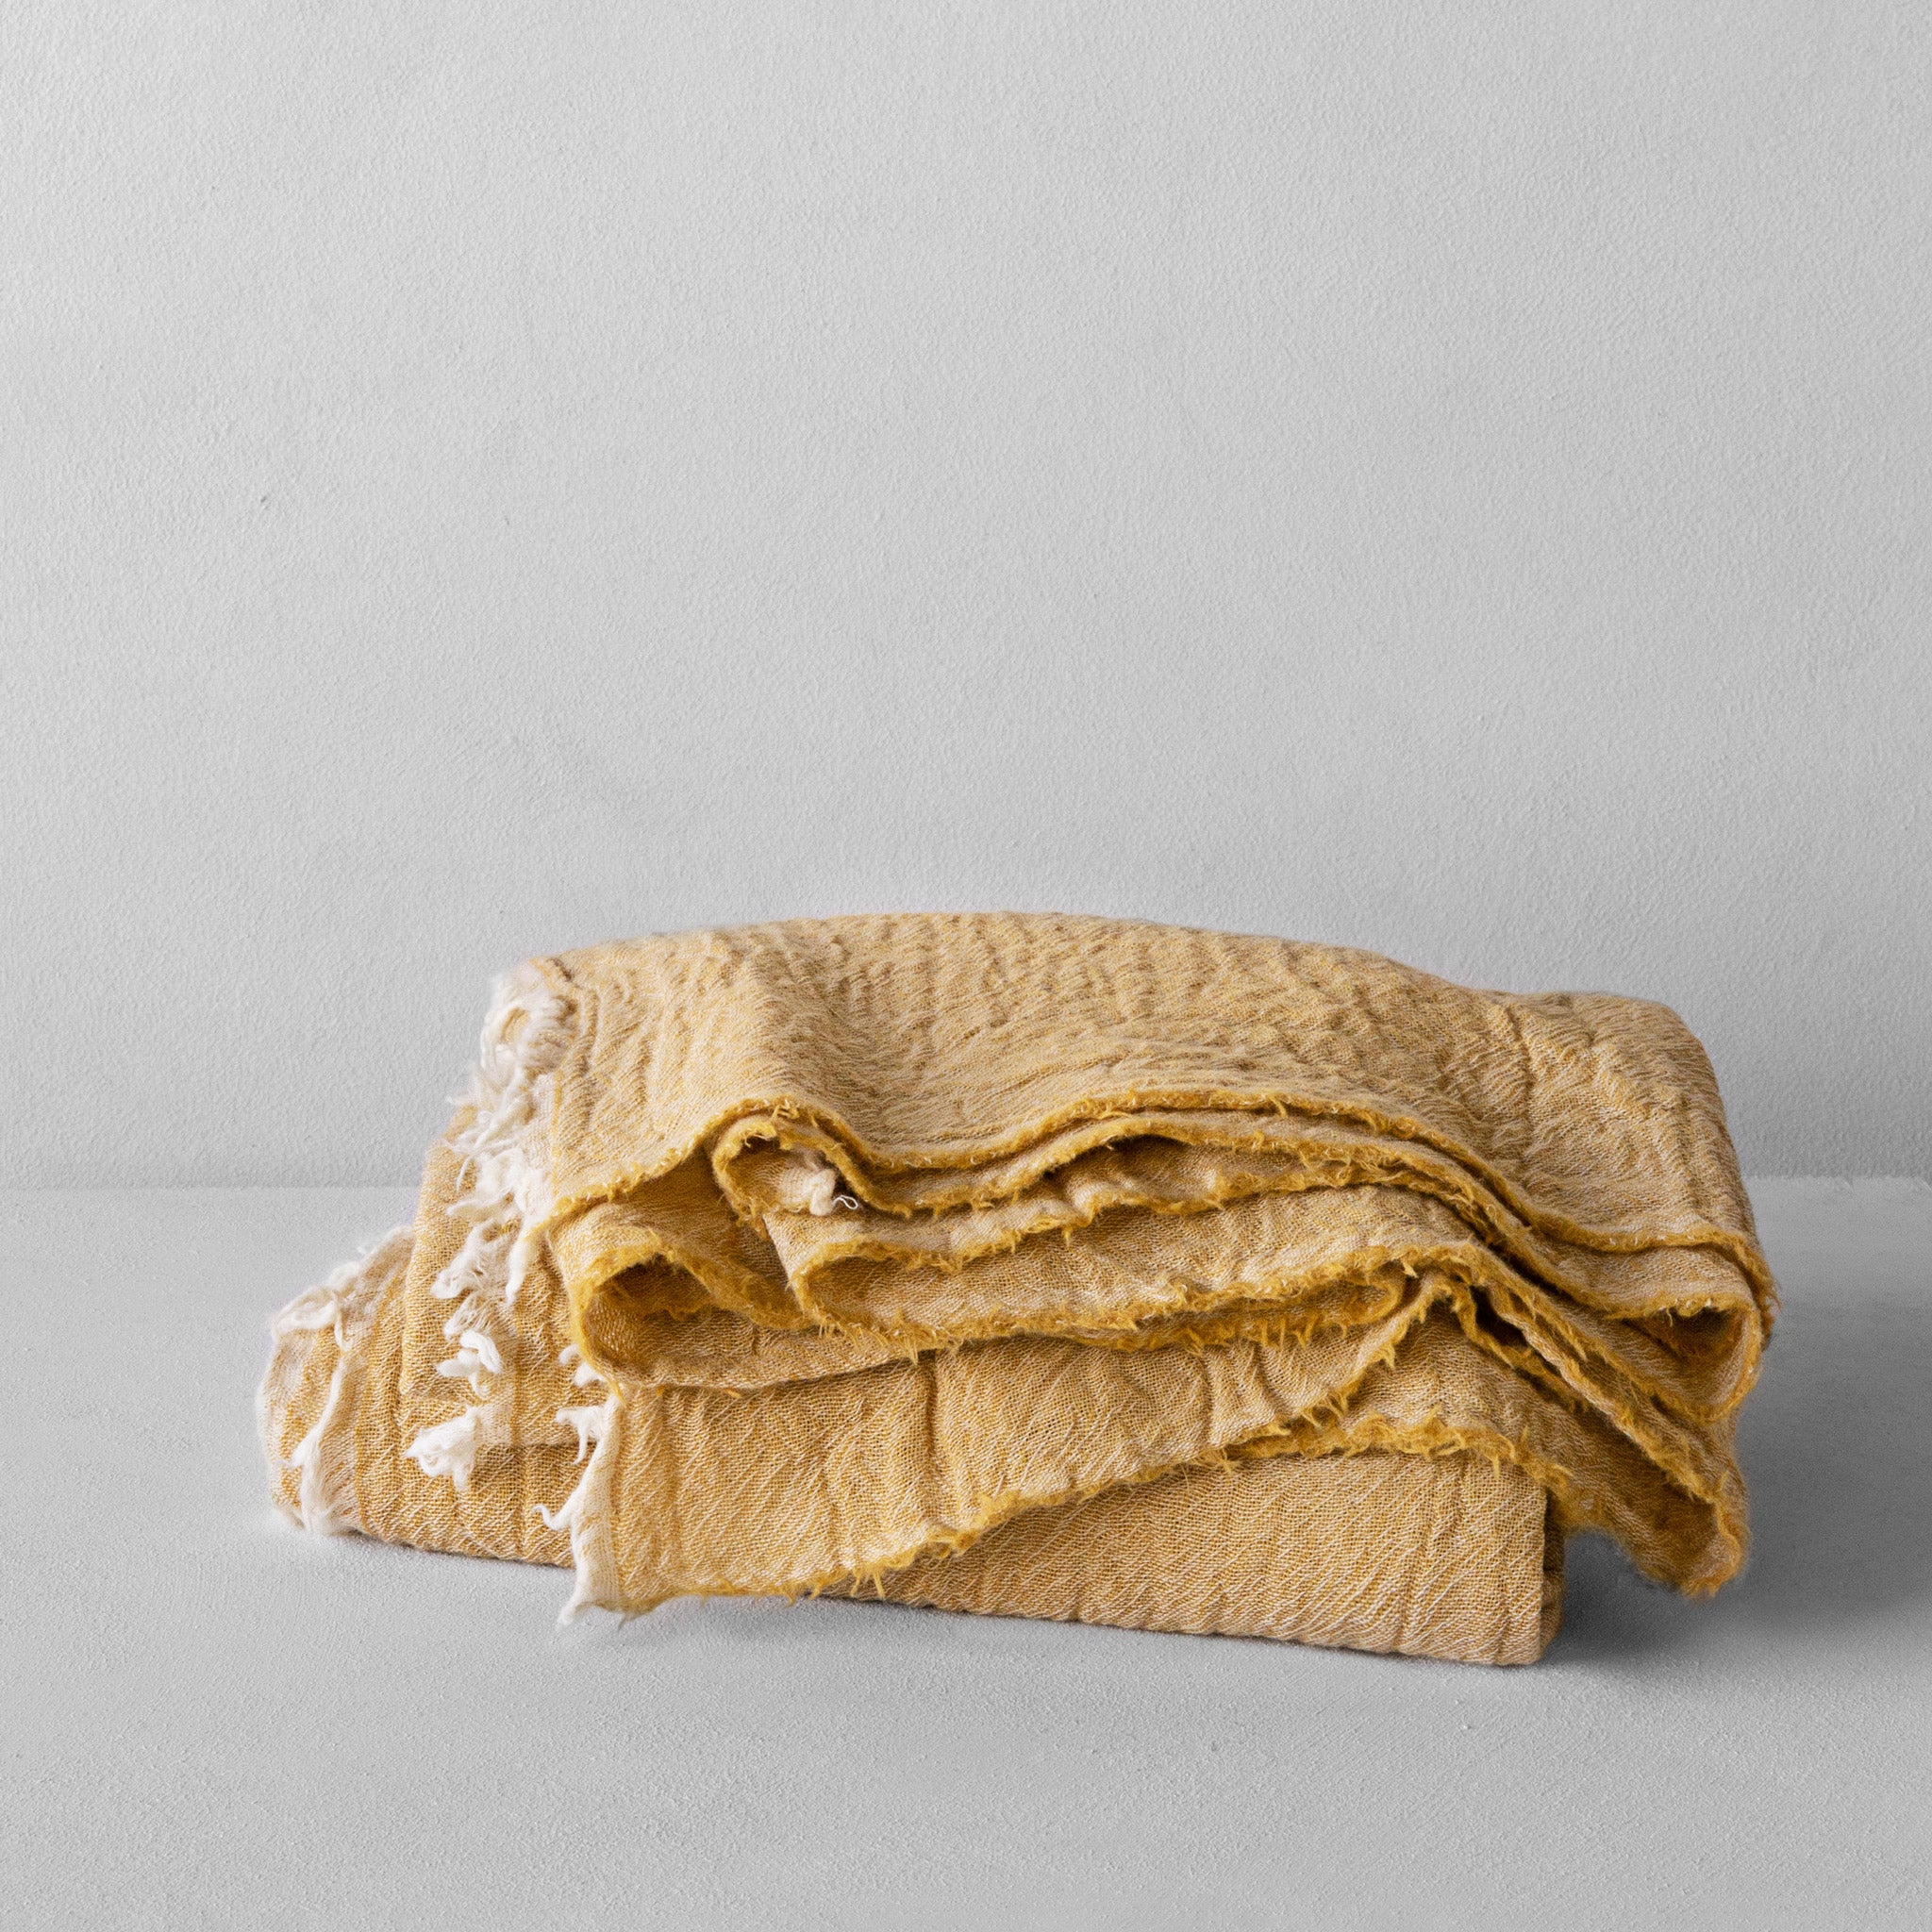 Wool Blanket, Luxurious Merino Wool Throw